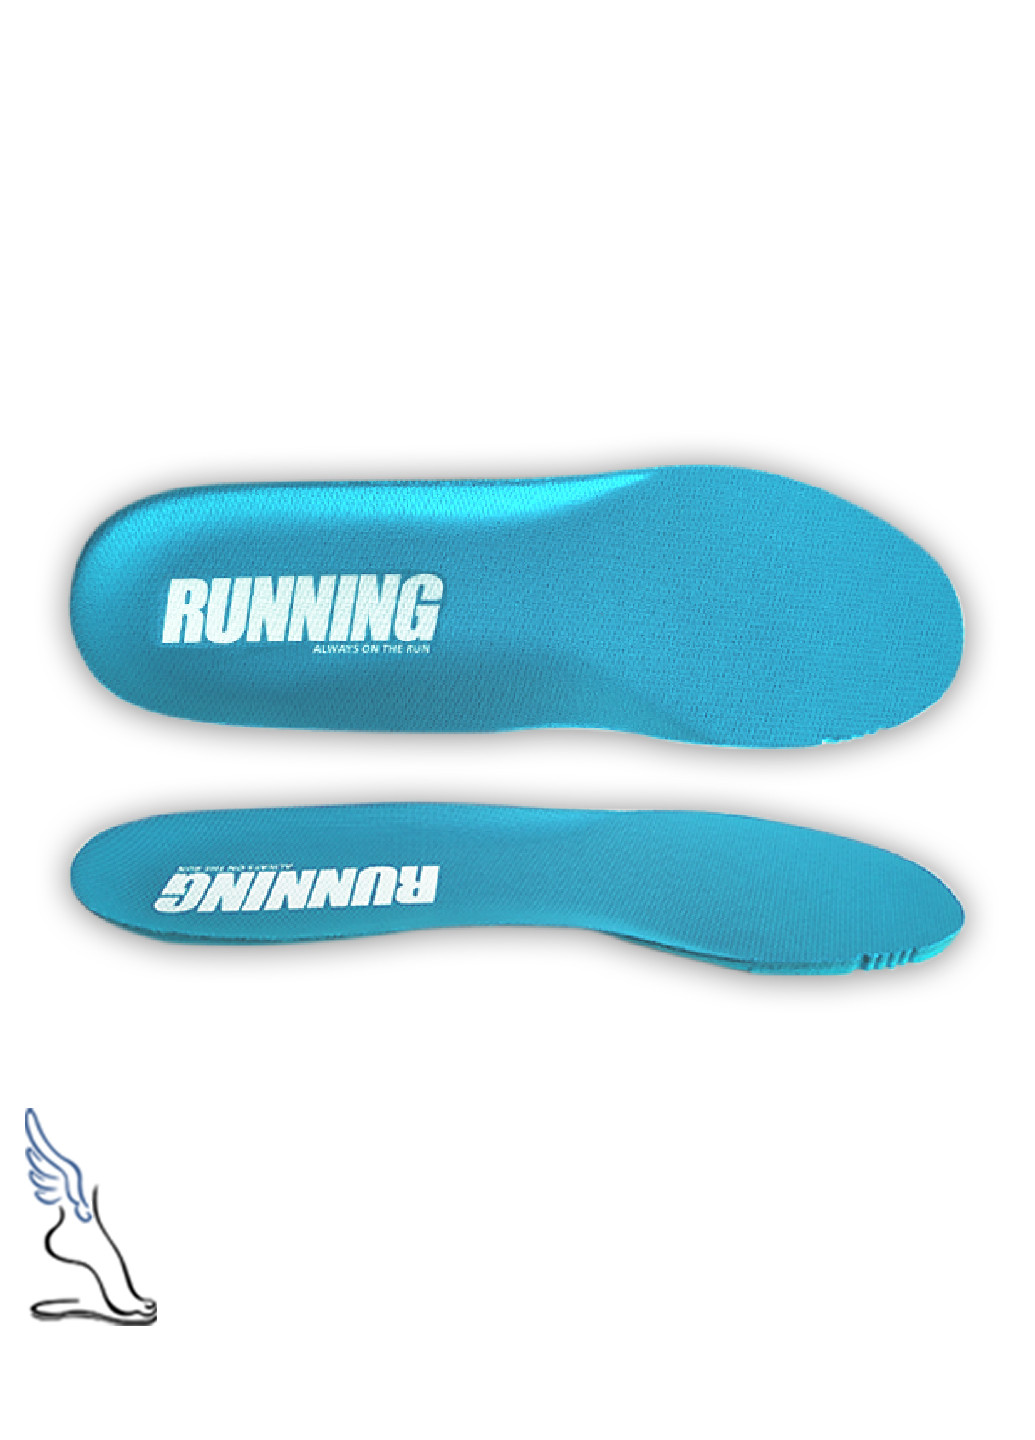 Стельки для спортивной обуви "Running", Ortholite No Brand (253137640)